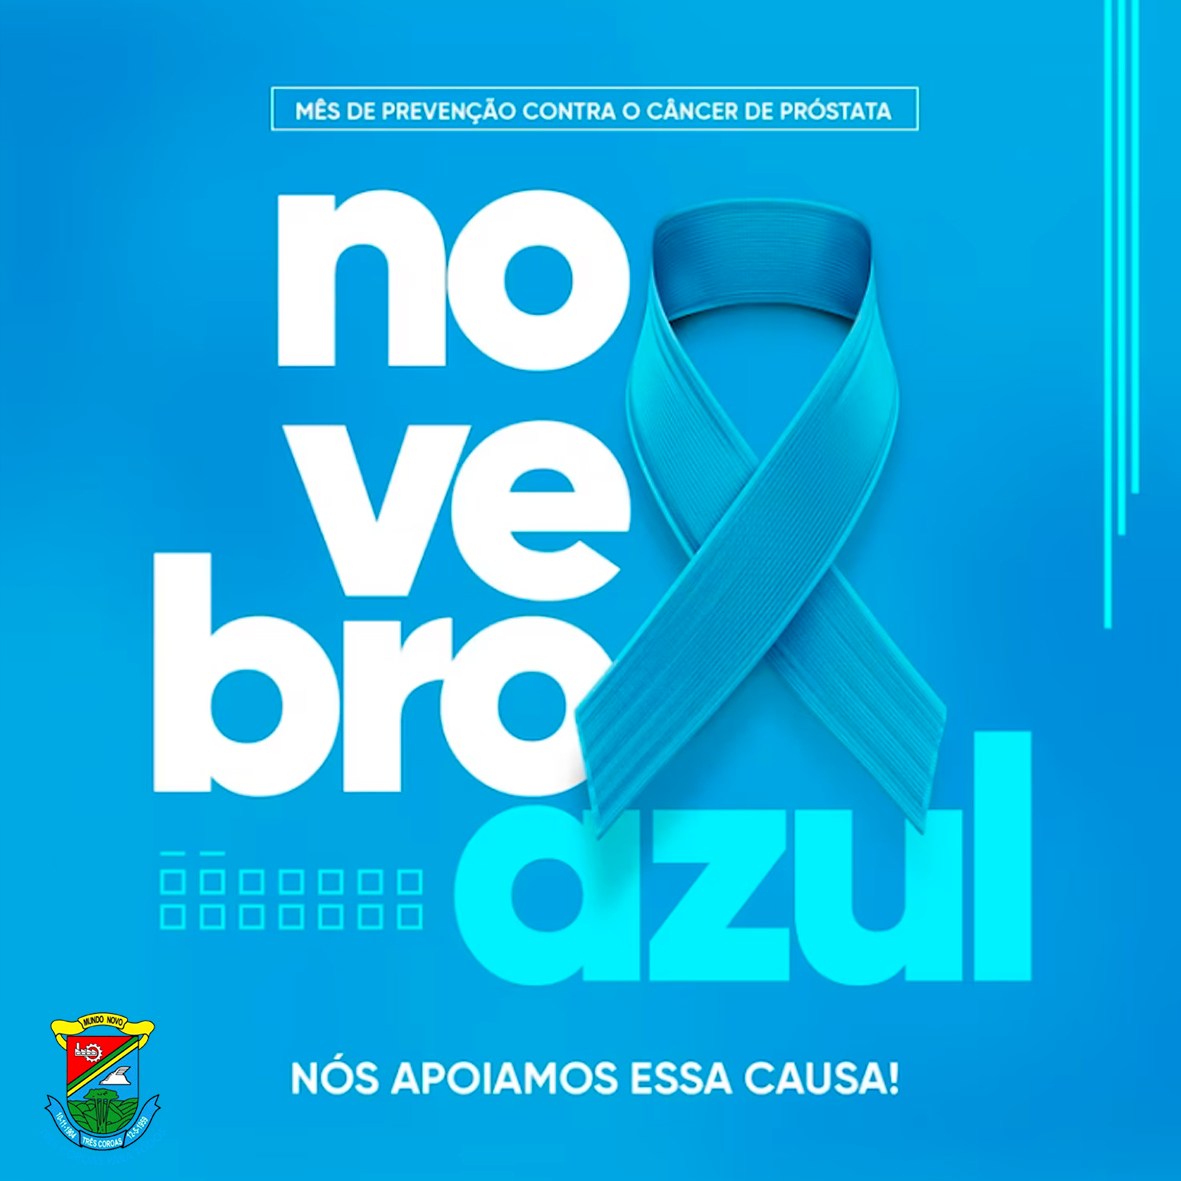  Novembro Azul: mês mundial de combate ao câncer de próstata.